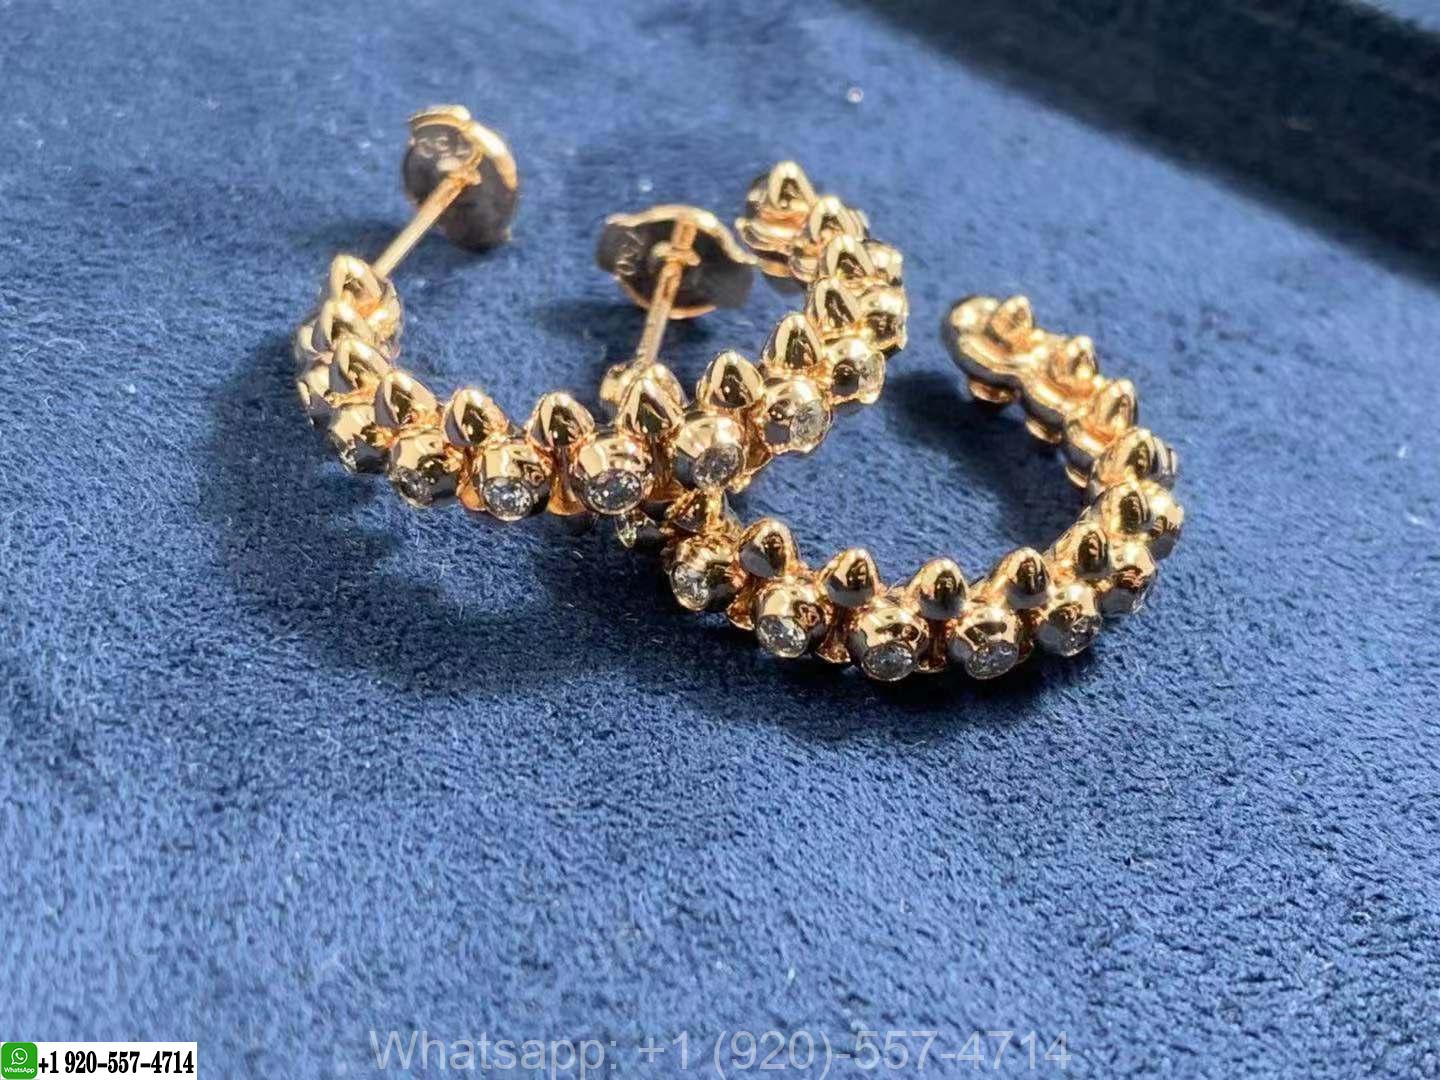 18k Rose Gold Clash de Cartier Diamond Earrings N8515173